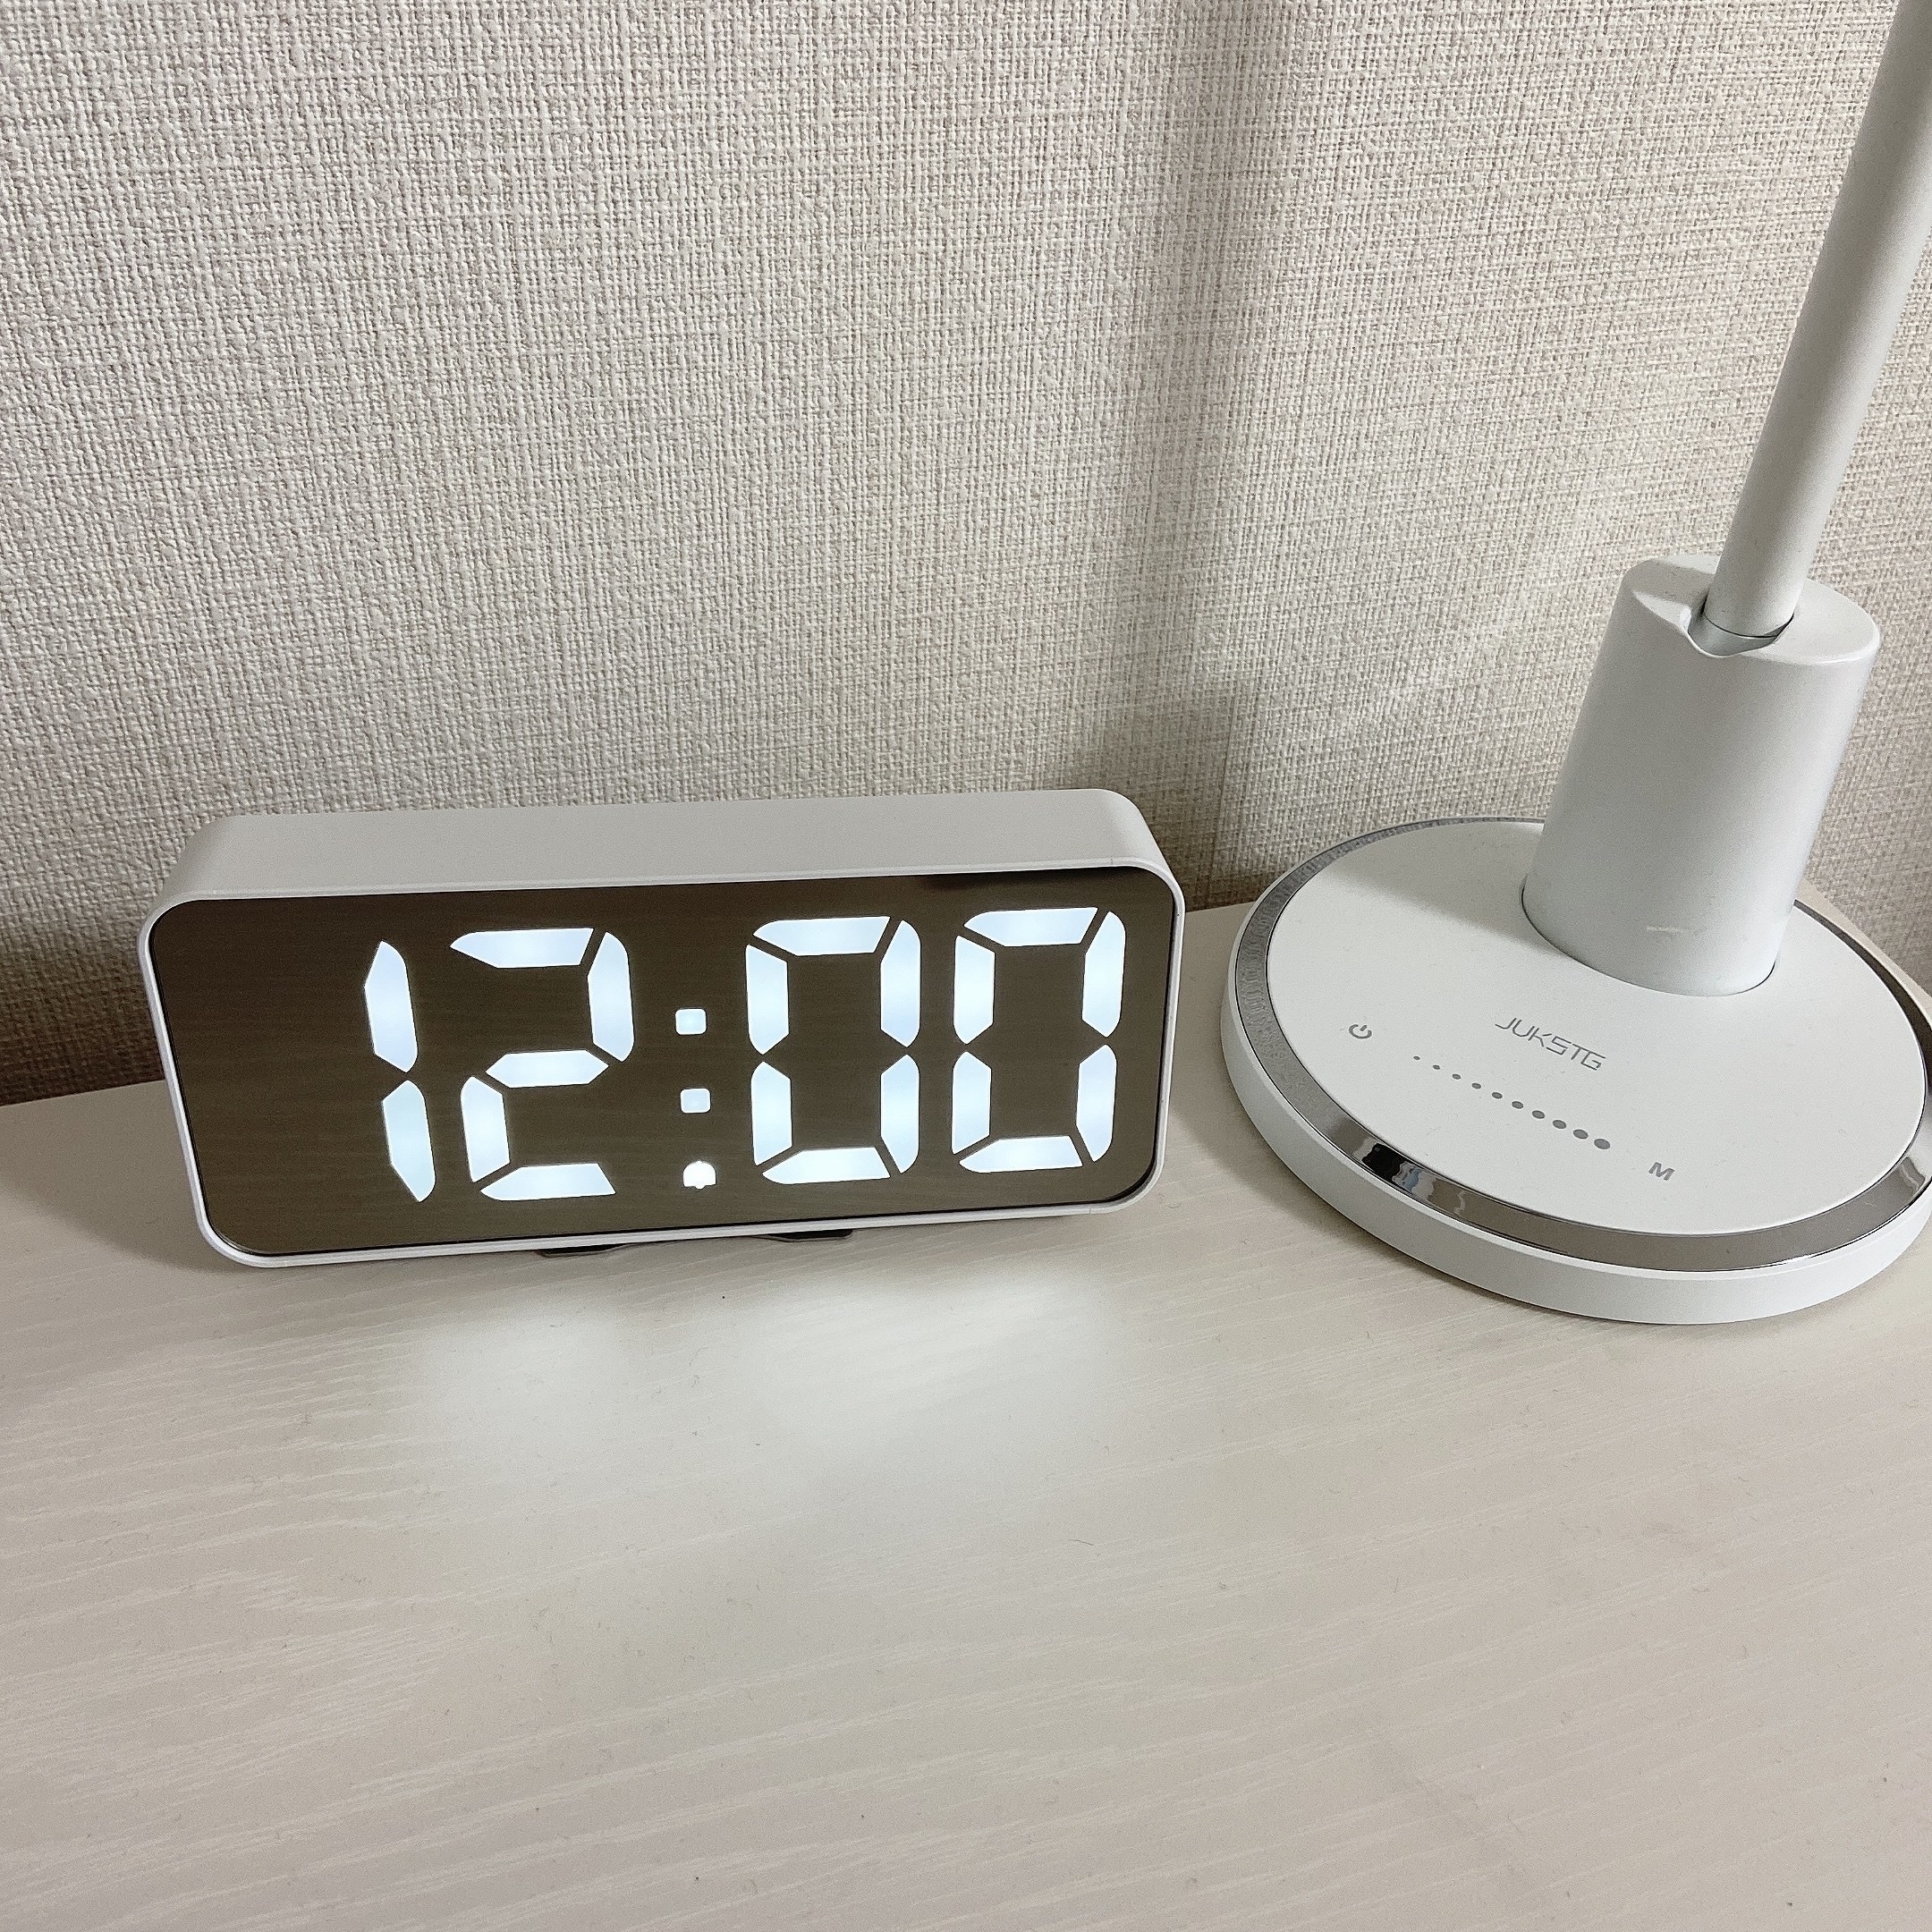 IKEA（イケア）のおすすめオシャレ時計「NOLLNING ノールニング 時計」